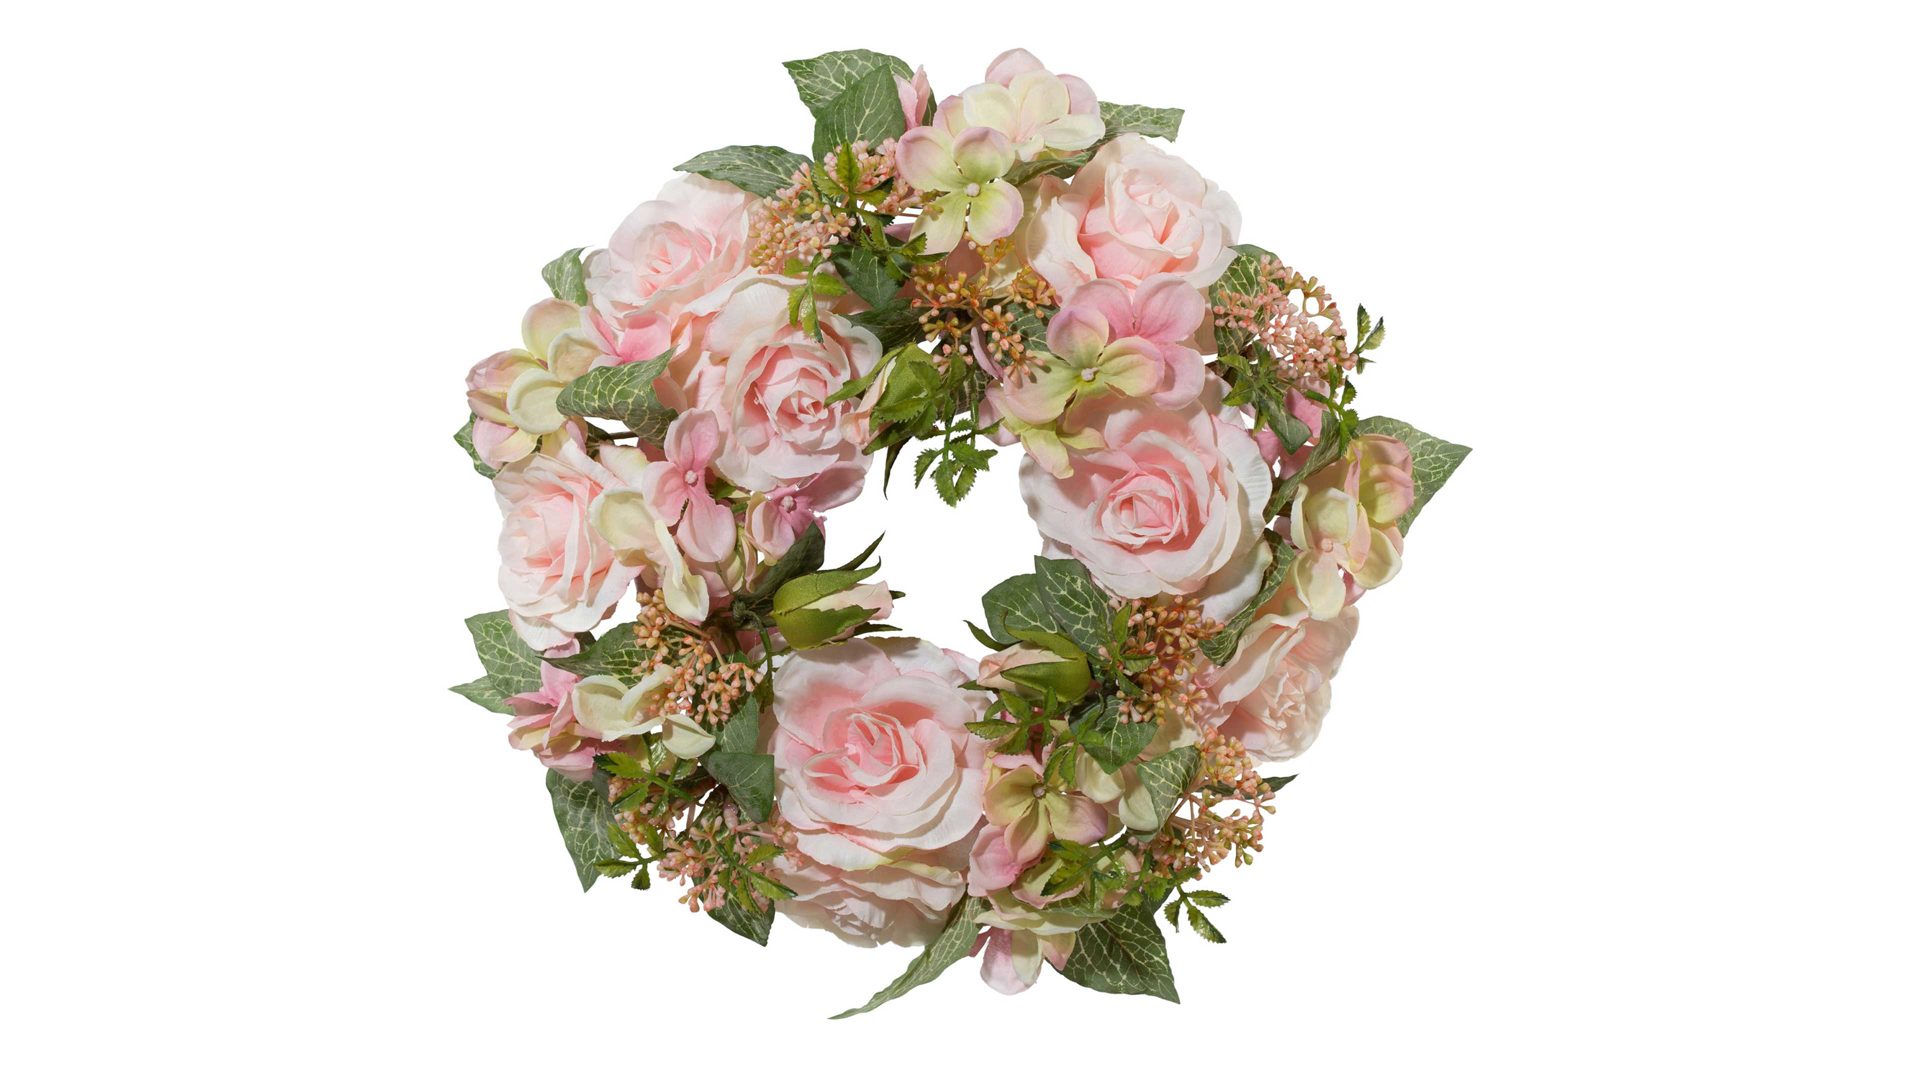 Kranz Gasper gmbh aus Stoff in Pastell Rosenkranz rosafarbene Textilblüten – Durchmesser ca. 33 cm